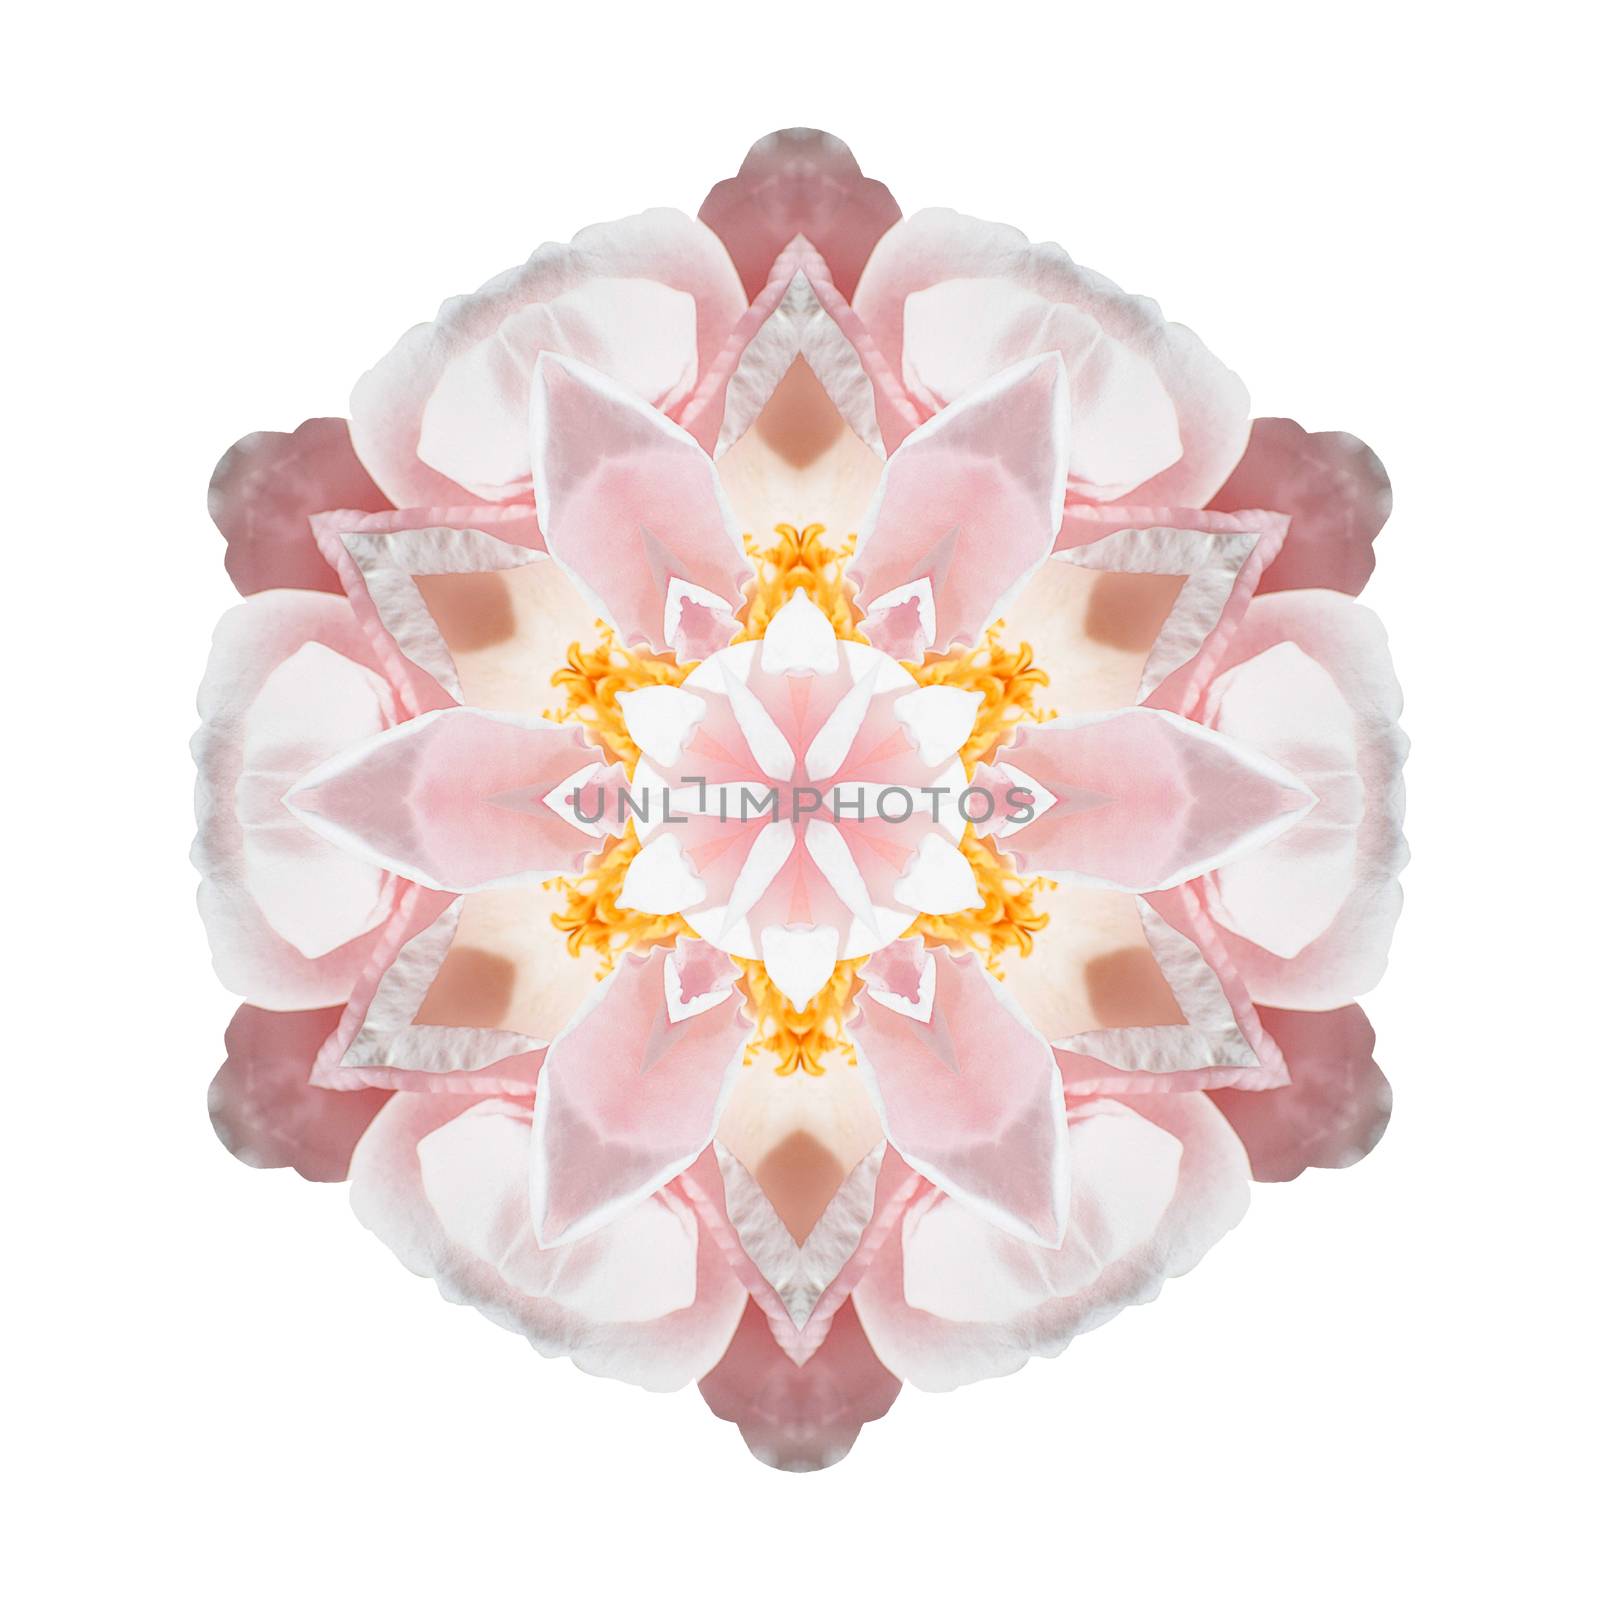 Flower mandala isolated on white background by migel